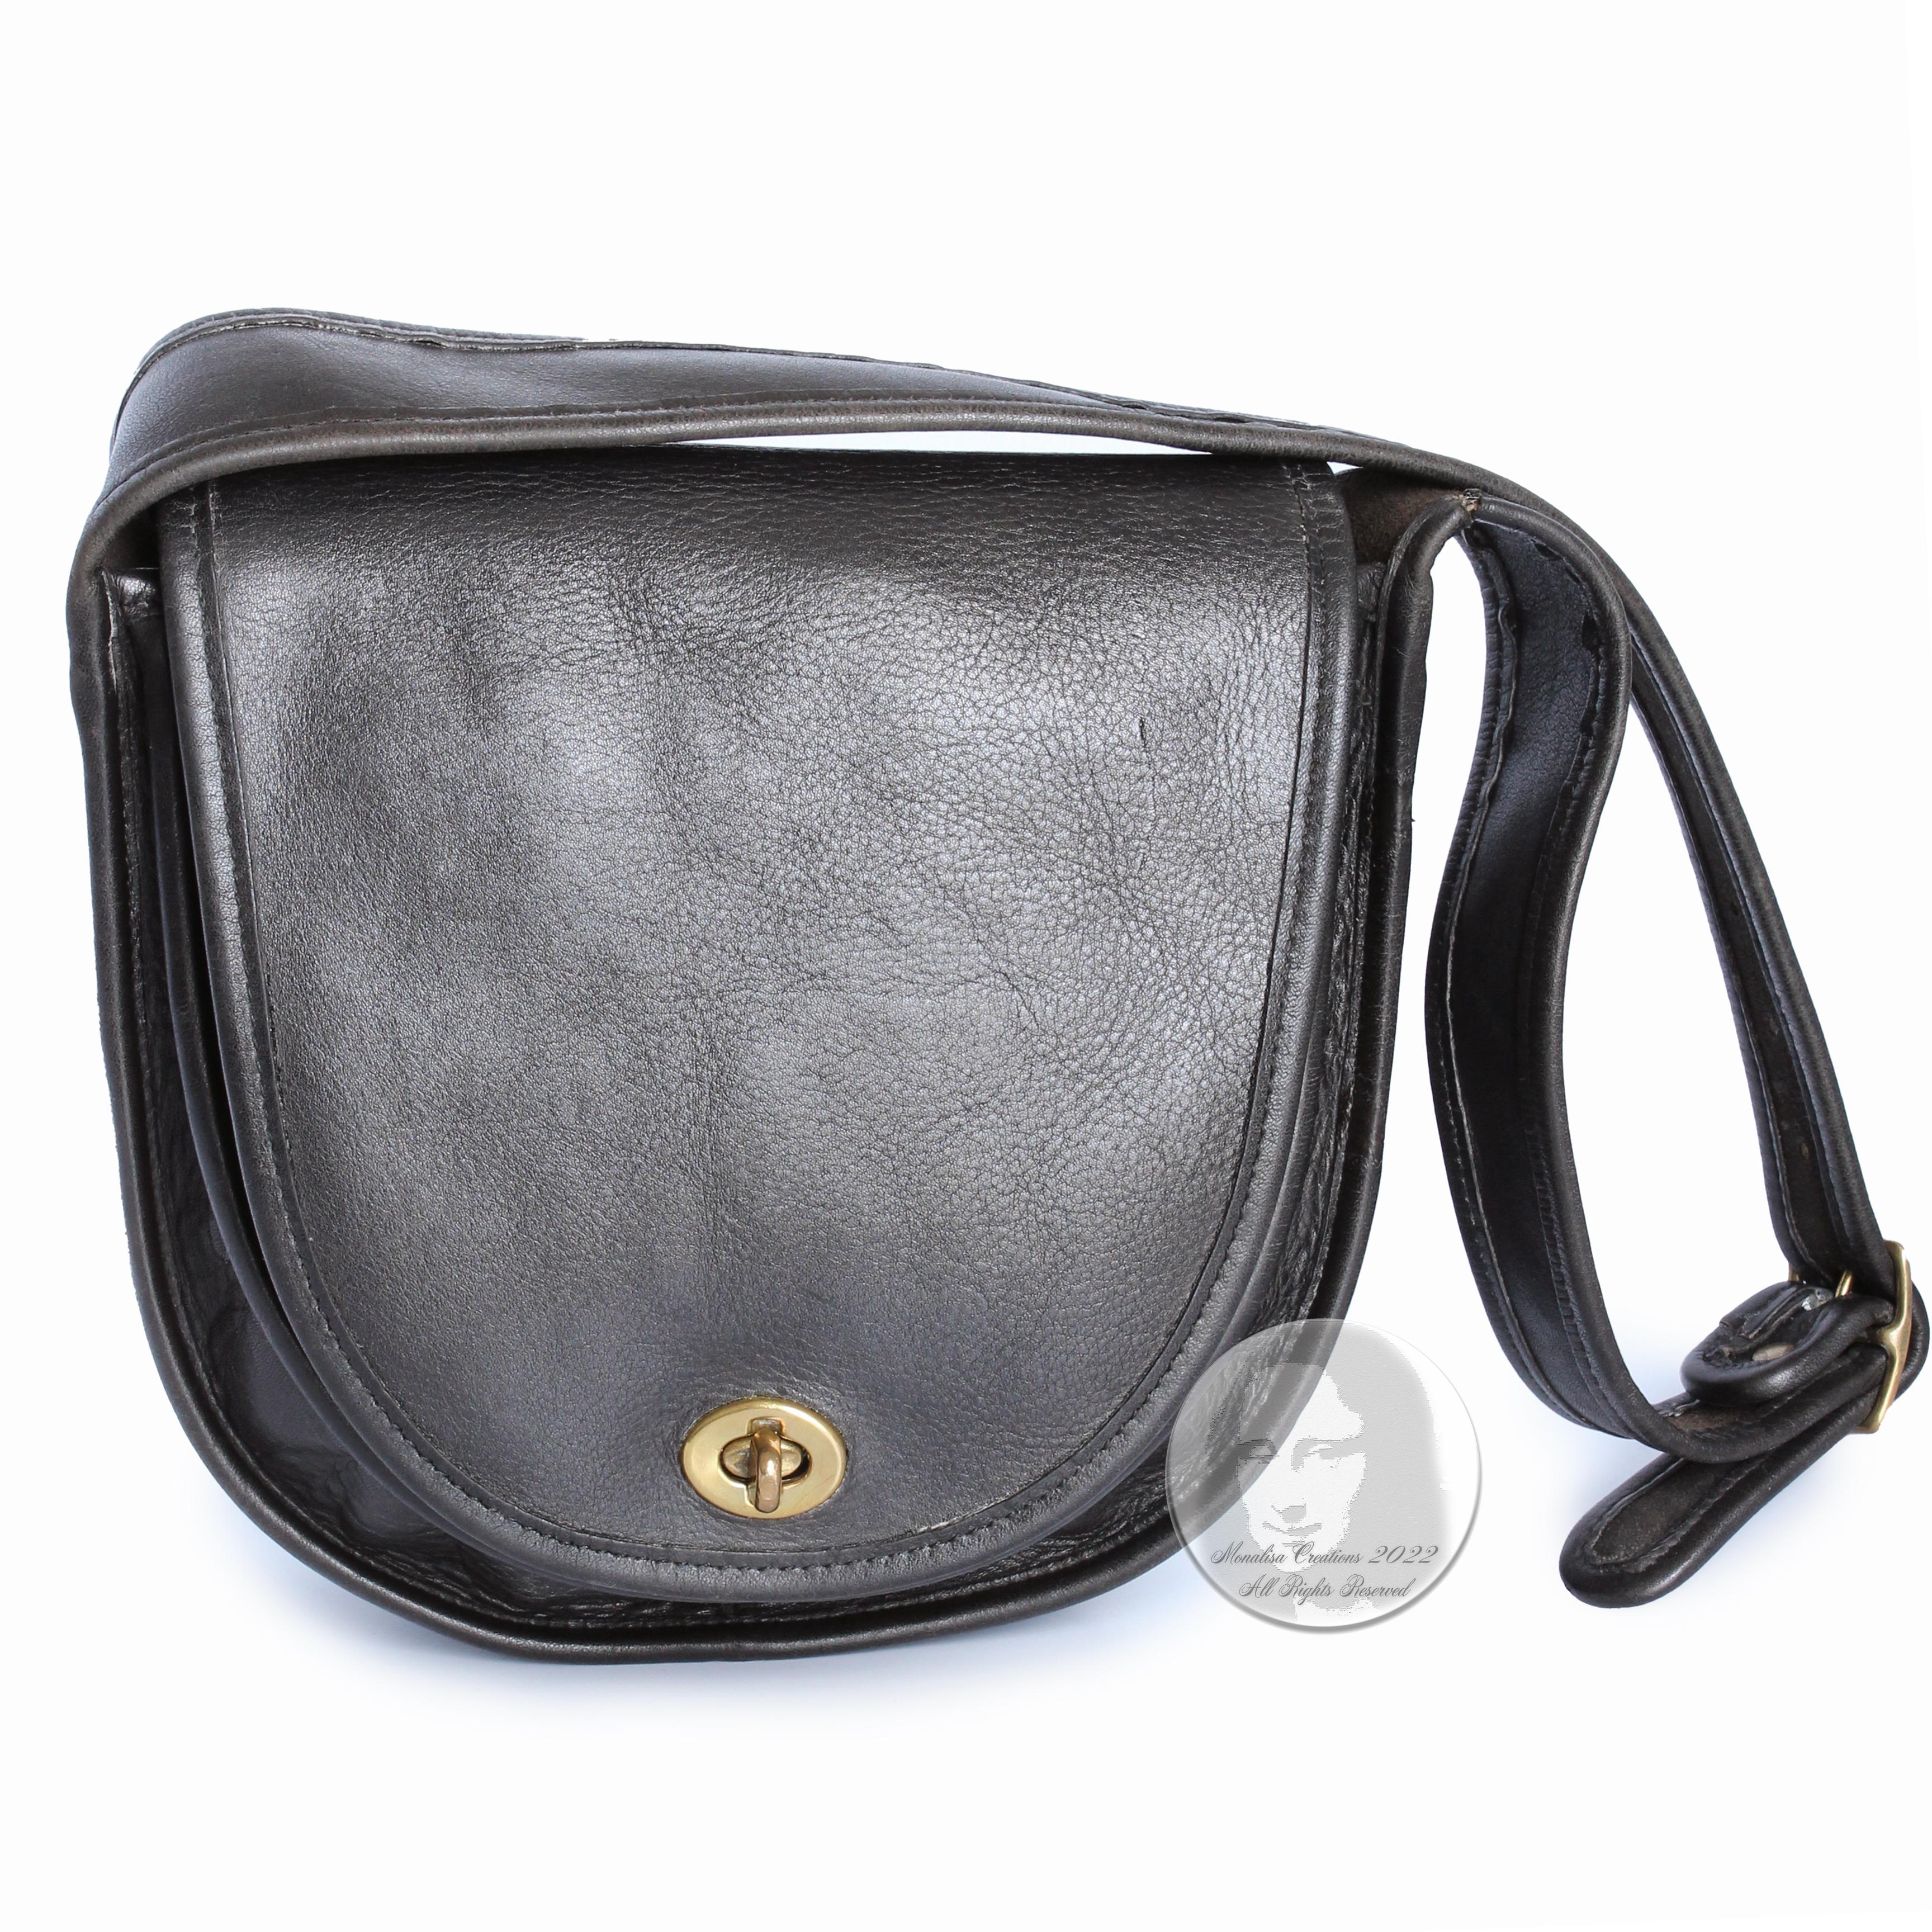 Leather Bag 70s - 7 For Sale on 1stDibs | 70s bag, 70s shoulder bags